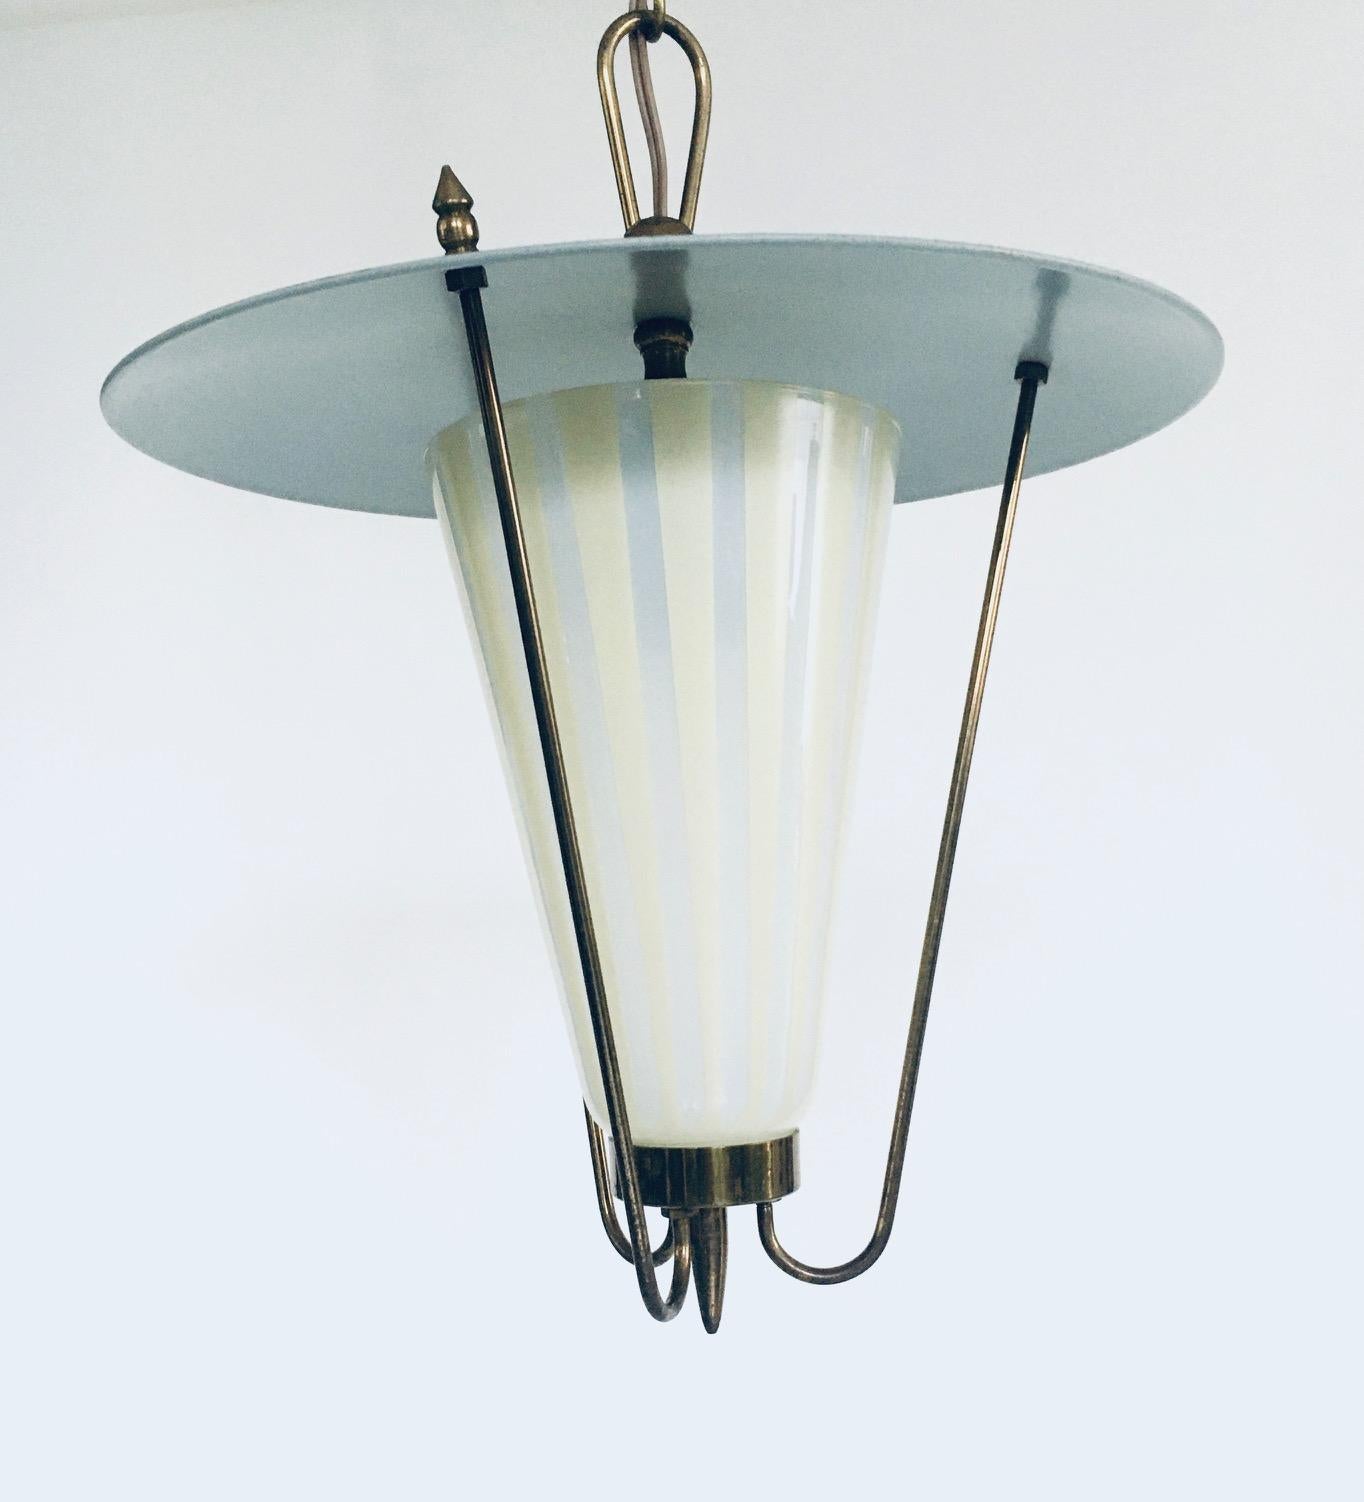 Metal 1950's Atomic Age Design Pendant Lantern Lamp